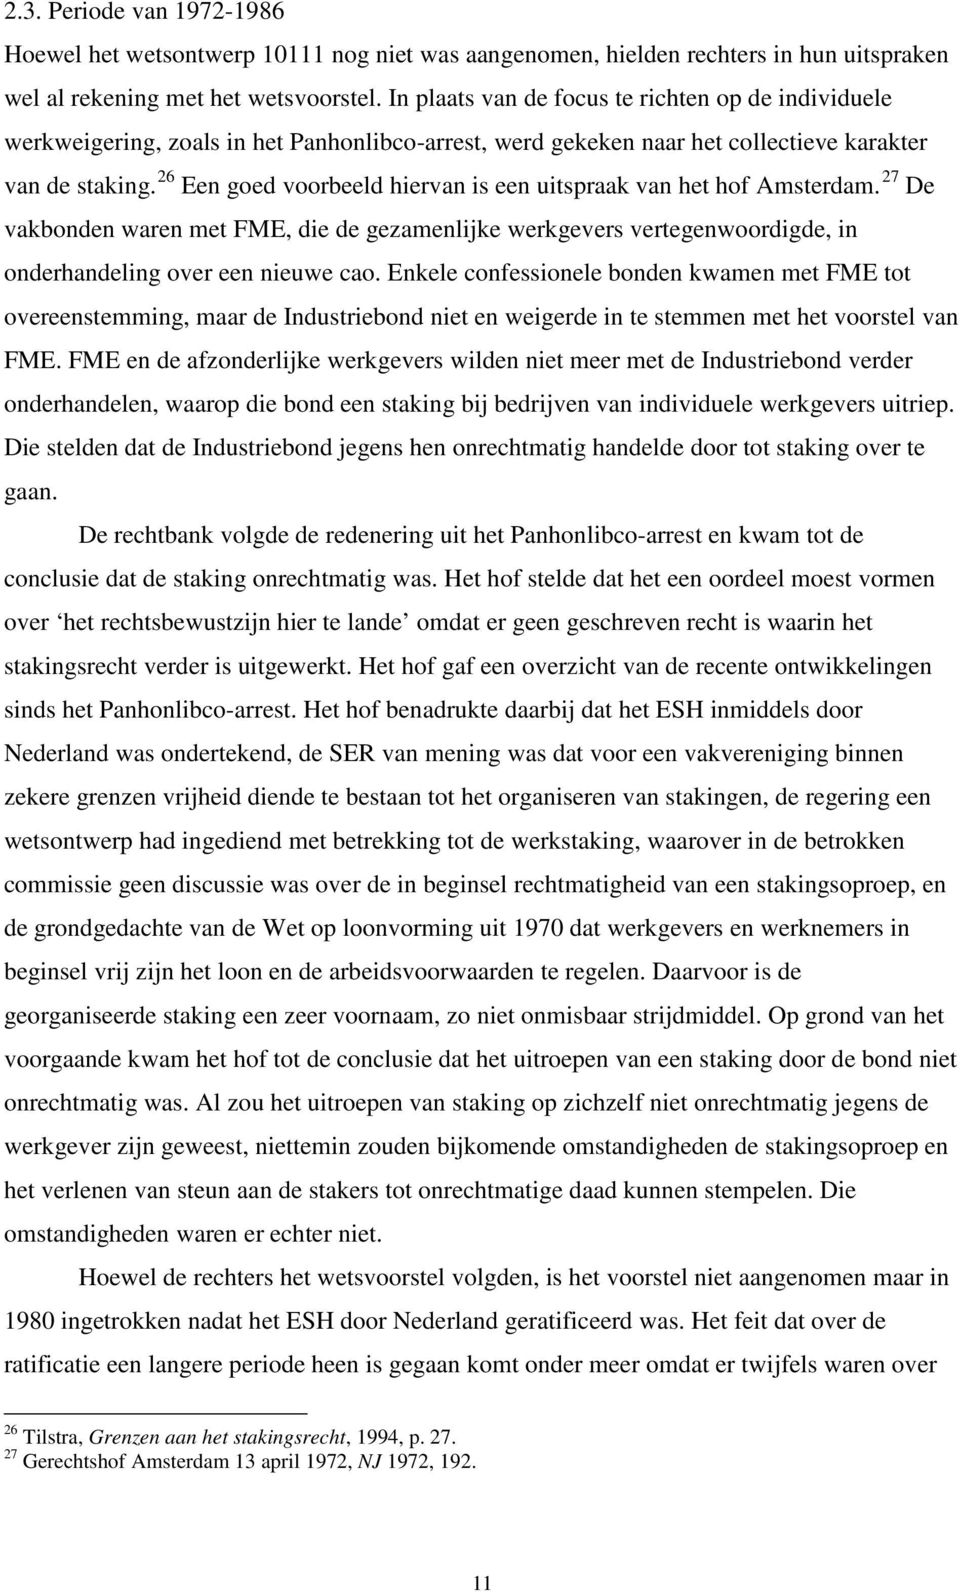 26 Een goed voorbeeld hiervan is een uitspraak van het hof Amsterdam. 27 De vakbonden waren met FME, die de gezamenlijke werkgevers vertegenwoordigde, in onderhandeling over een nieuwe cao.